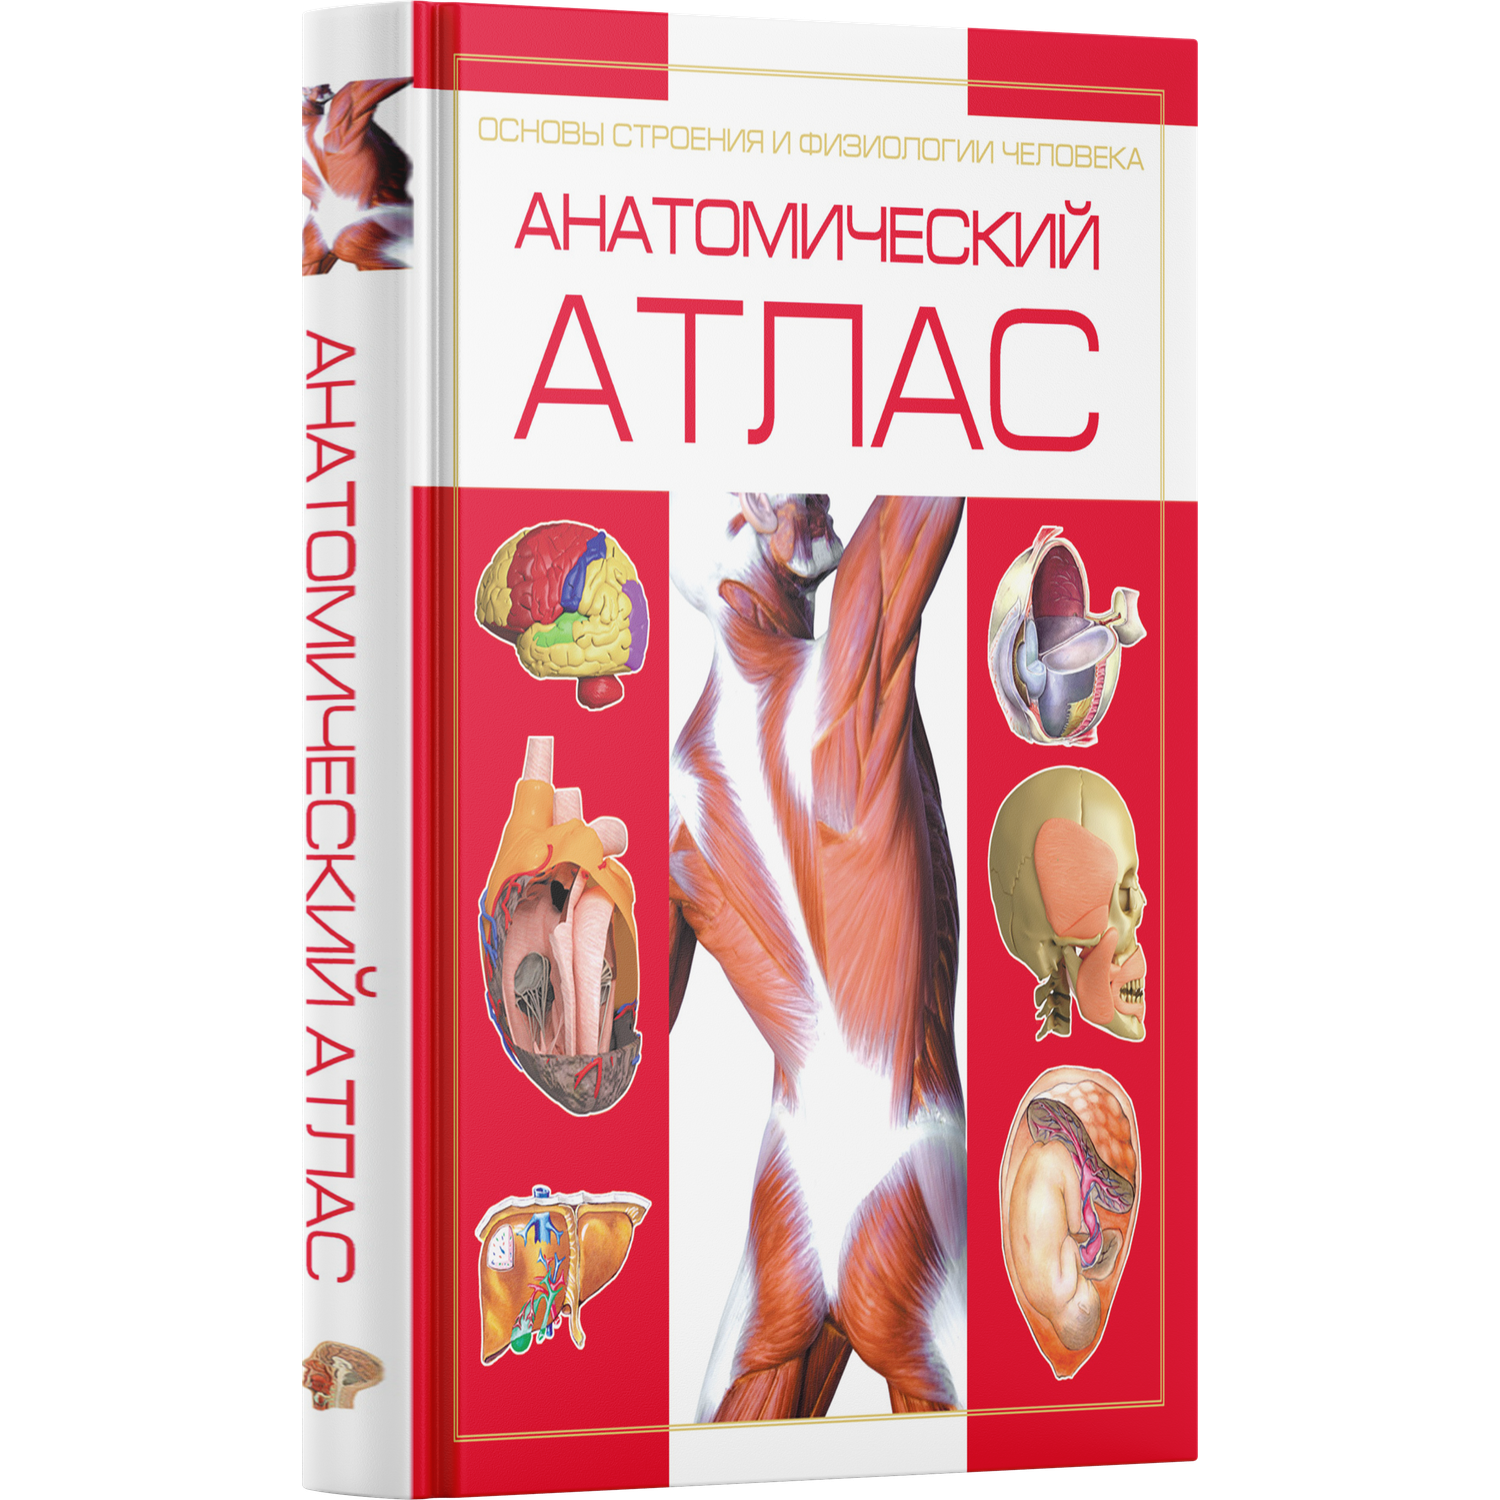 Книга Харвест Книга Атлас анатомии человека Основы строения и физиологии тела - фото 1